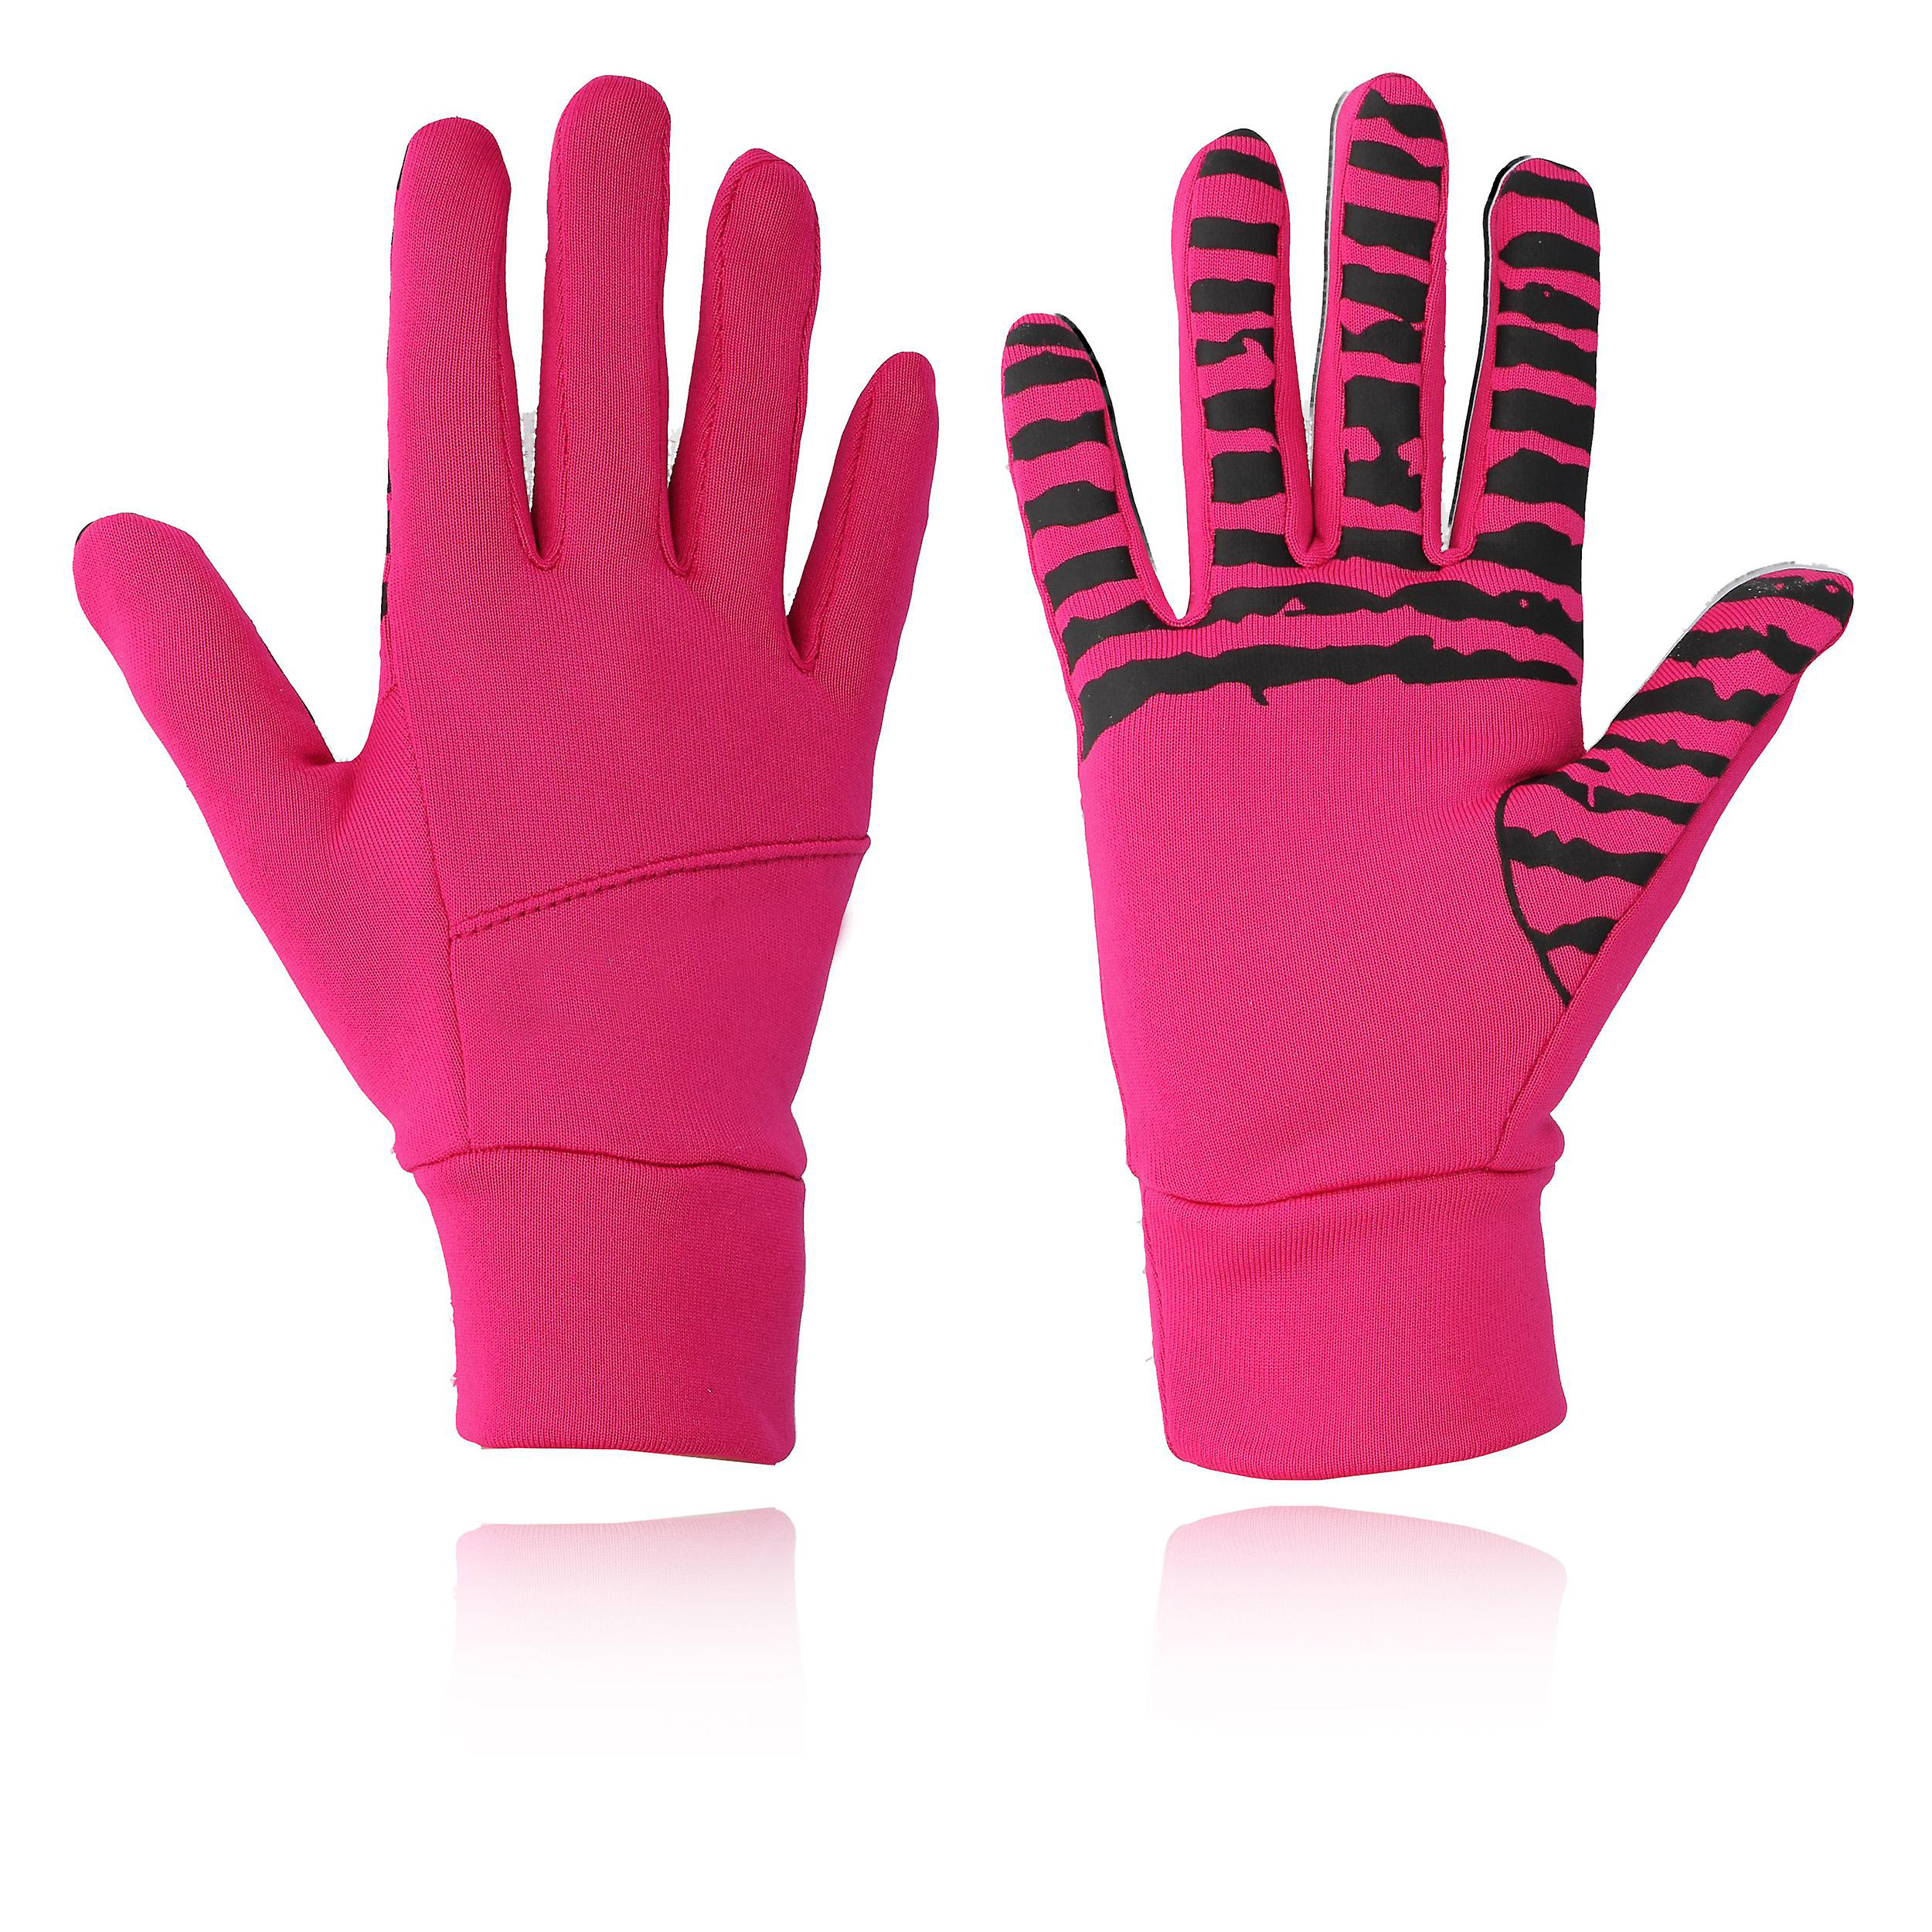 Winter women running gloves pink warm ladies outdoor running gloves